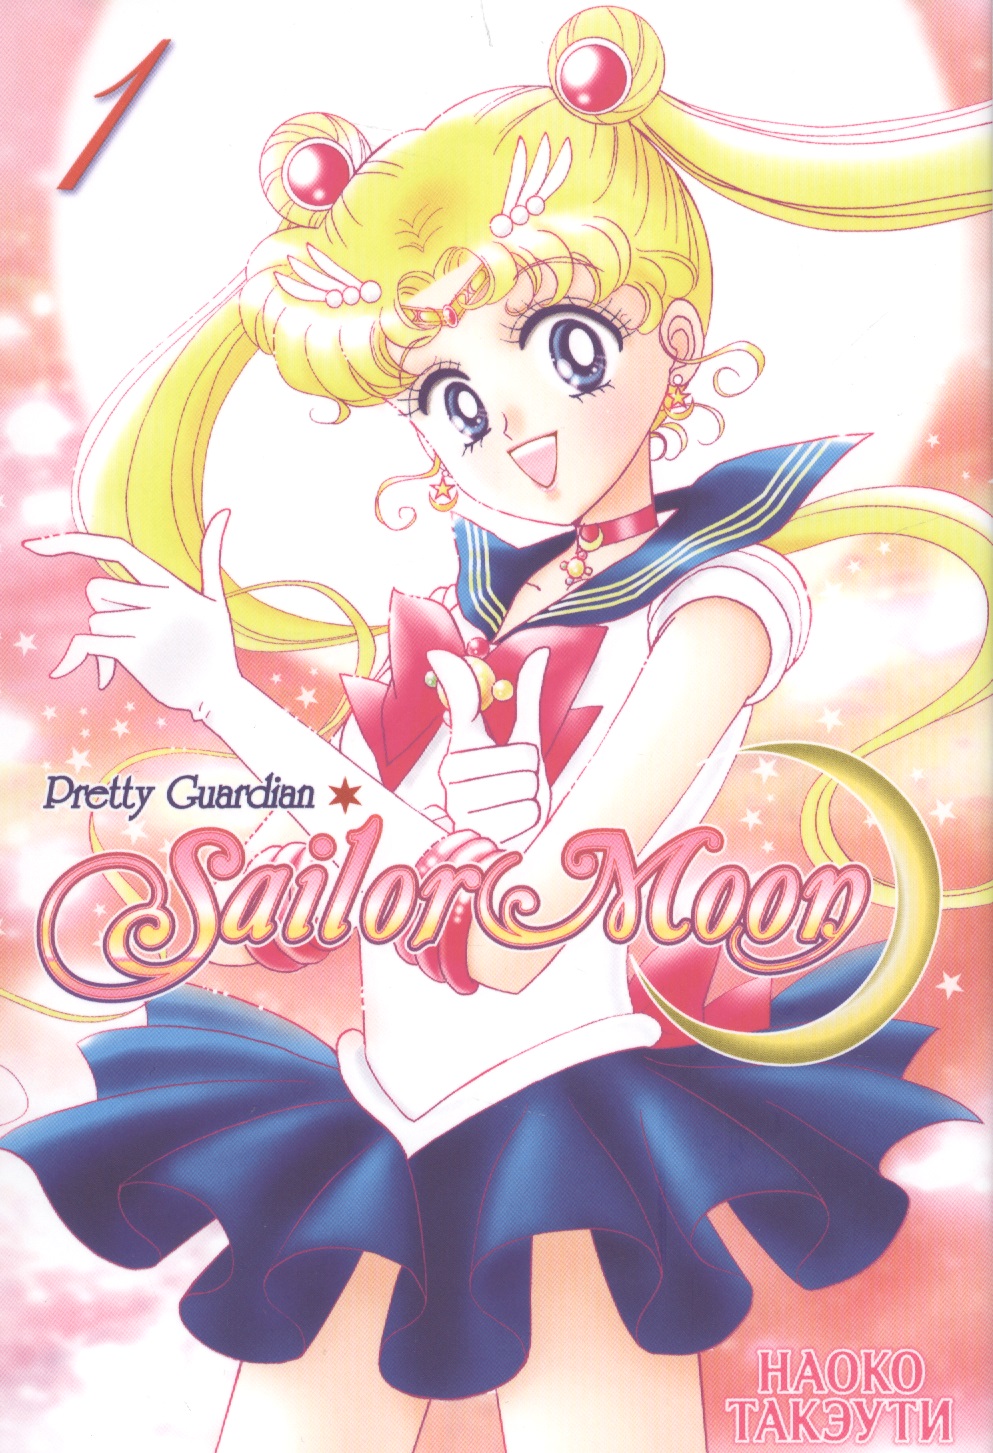 Такэути Наоко Sailor Moon. Том 1. такэути наоко sailor moon pretty guardian том 2